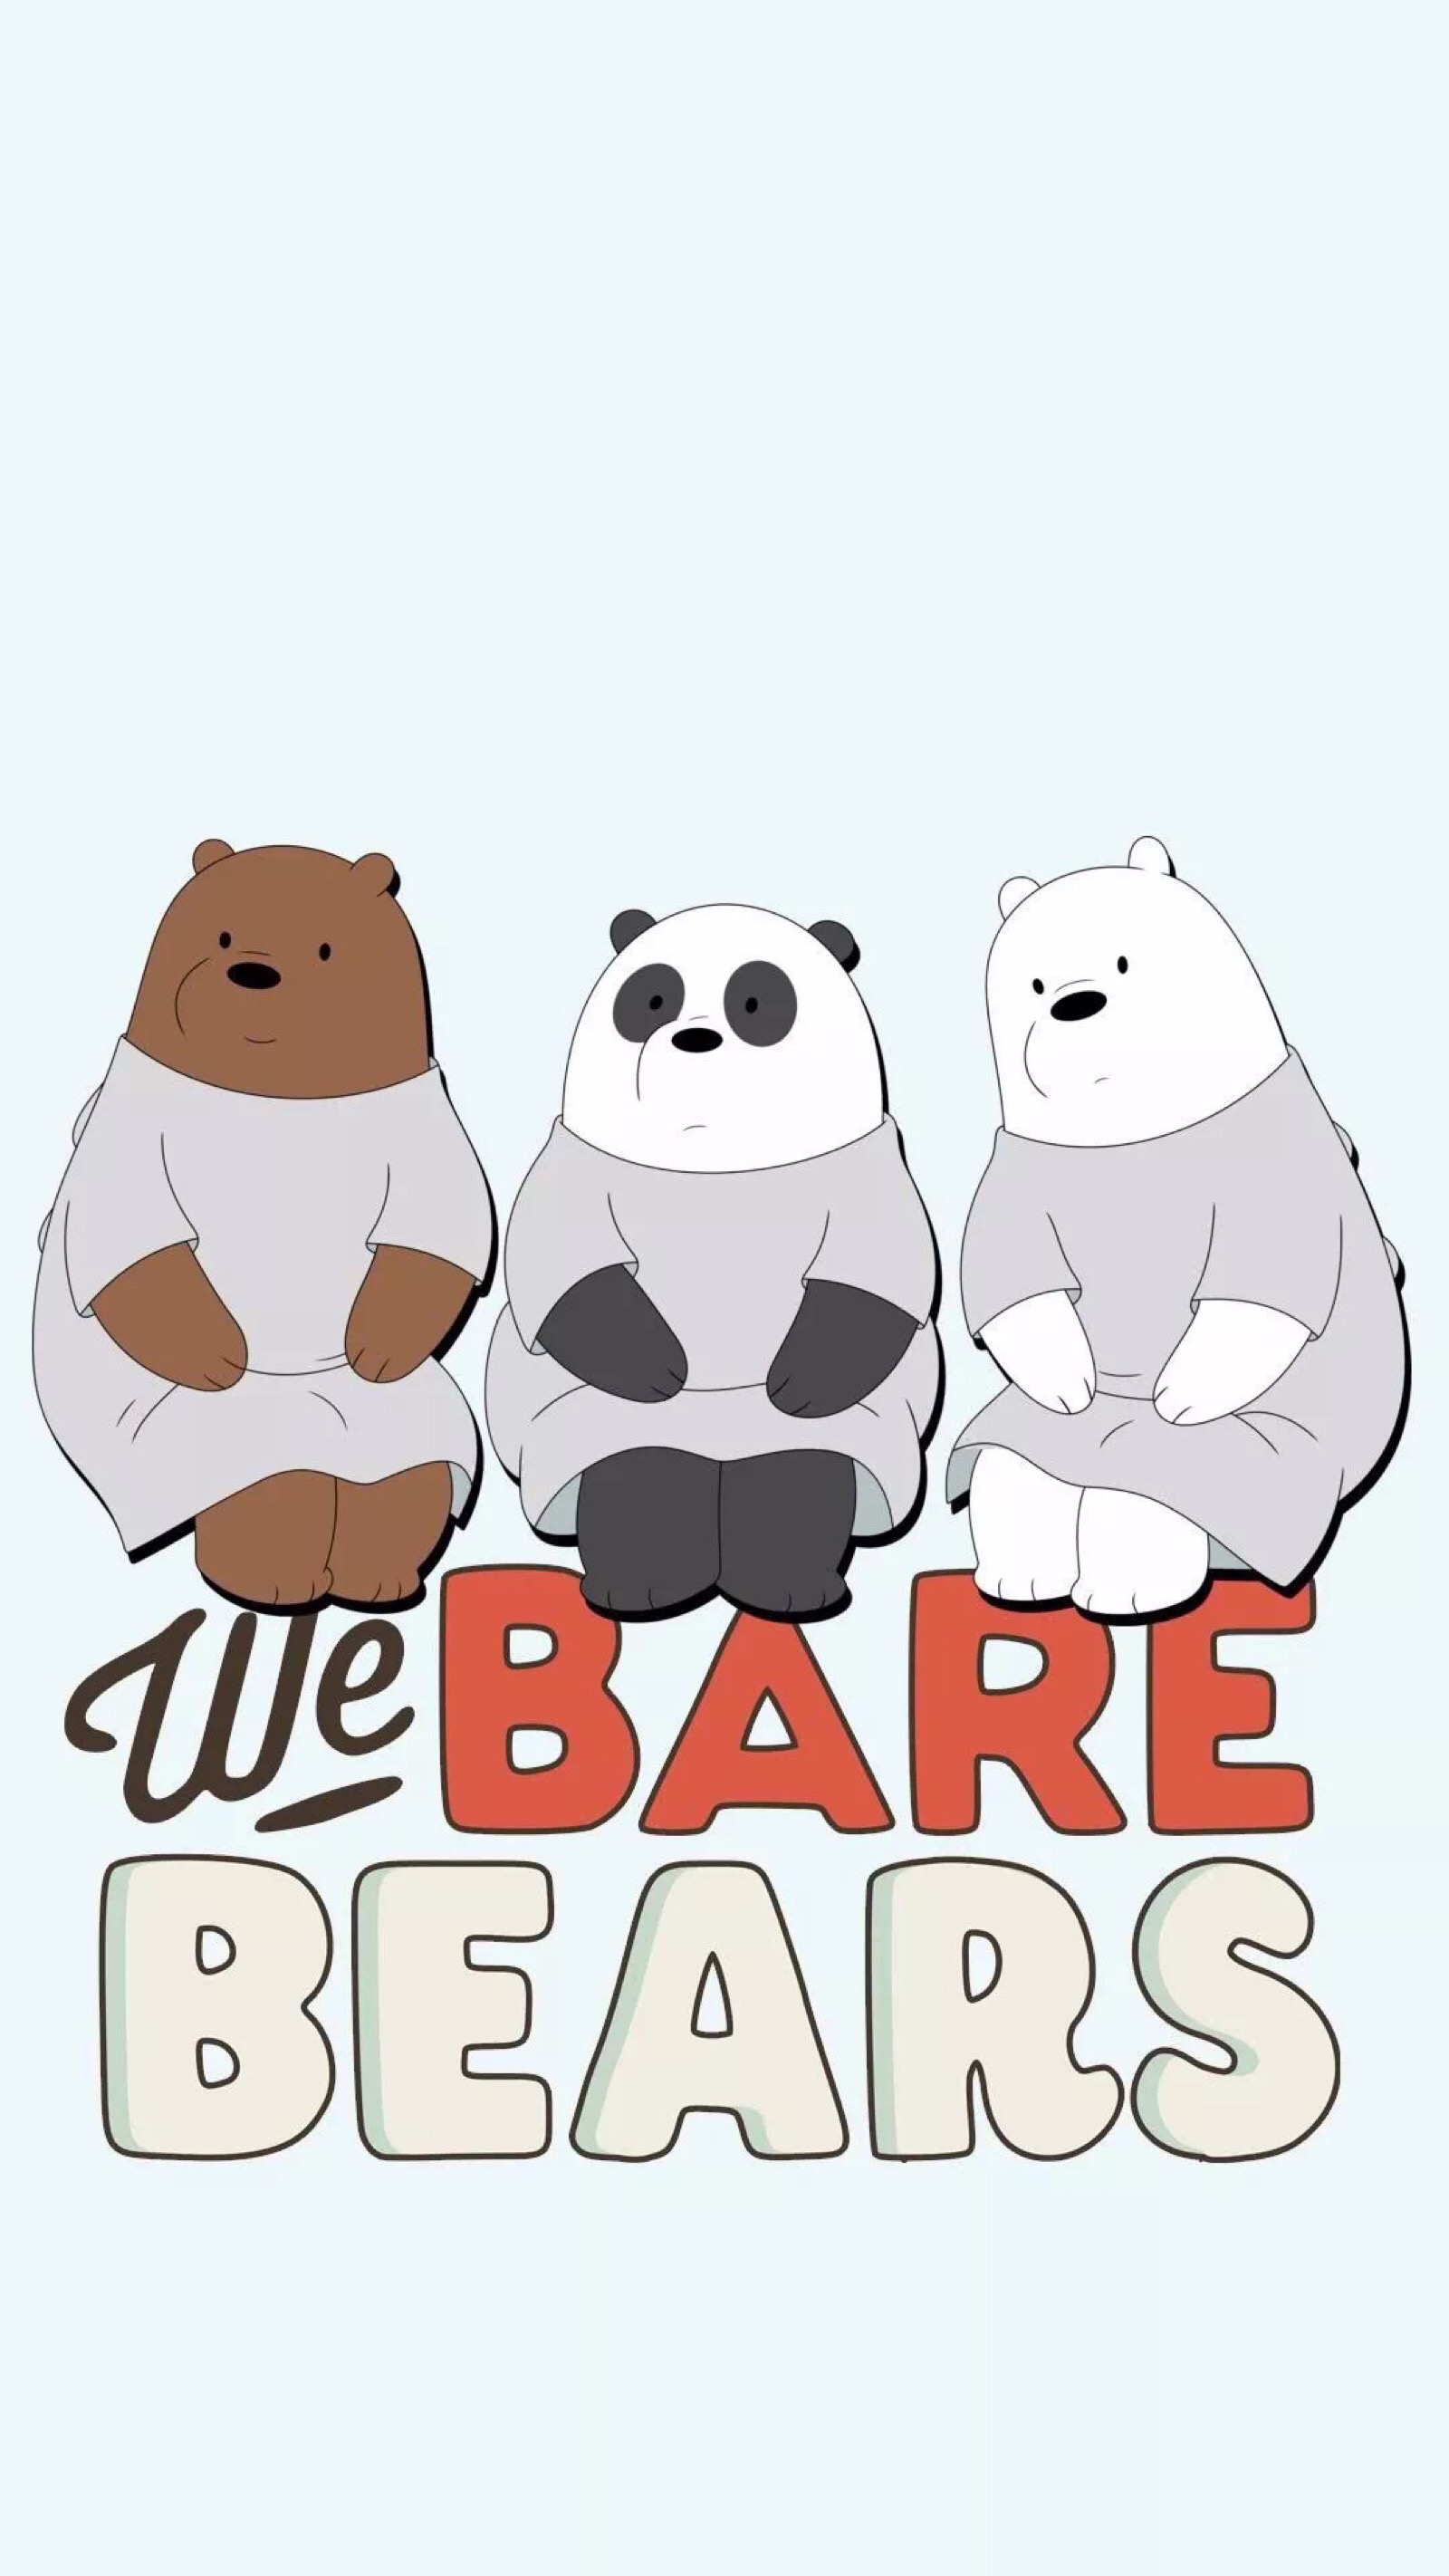 【壁纸】三只裸熊 we bare bear